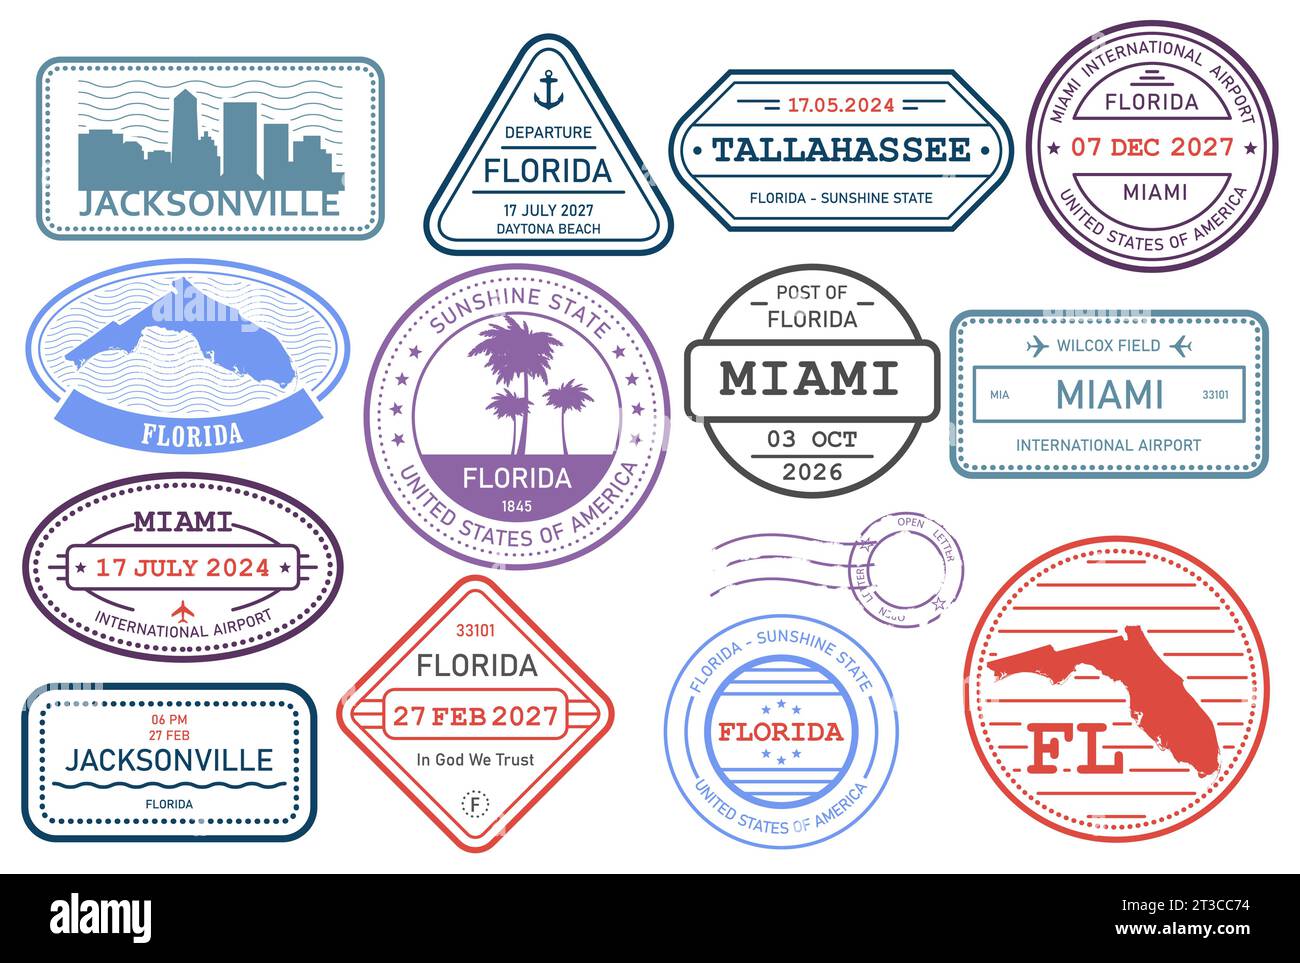 Florida Briefmarken Set, Briefmarke mit Symbolen des Bundesstaates und der Kartenumrisse, Vektor Stock Vektor